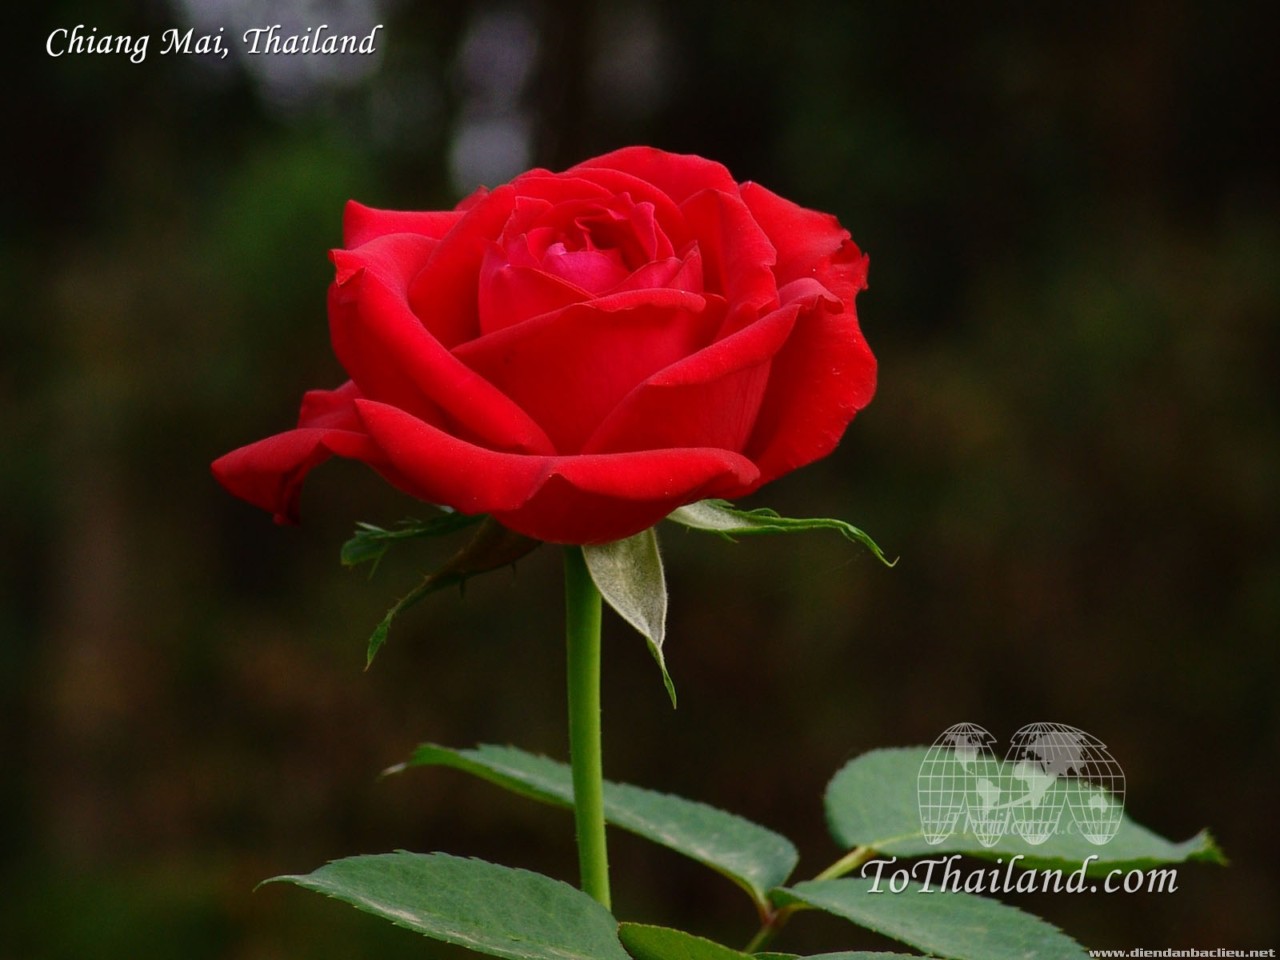 Hoa hồng đỏ với sắc đỏ rực rỡ cùng với hương thơm đặc trưng sẽ đốn tim bất kì ai yêu thích sự đẹp và quyến rũ. Hãy thưởng thức hình ảnh hoa hồng đỏ đẹp để cảm nhận sức hút mạnh mẽ của chúng.